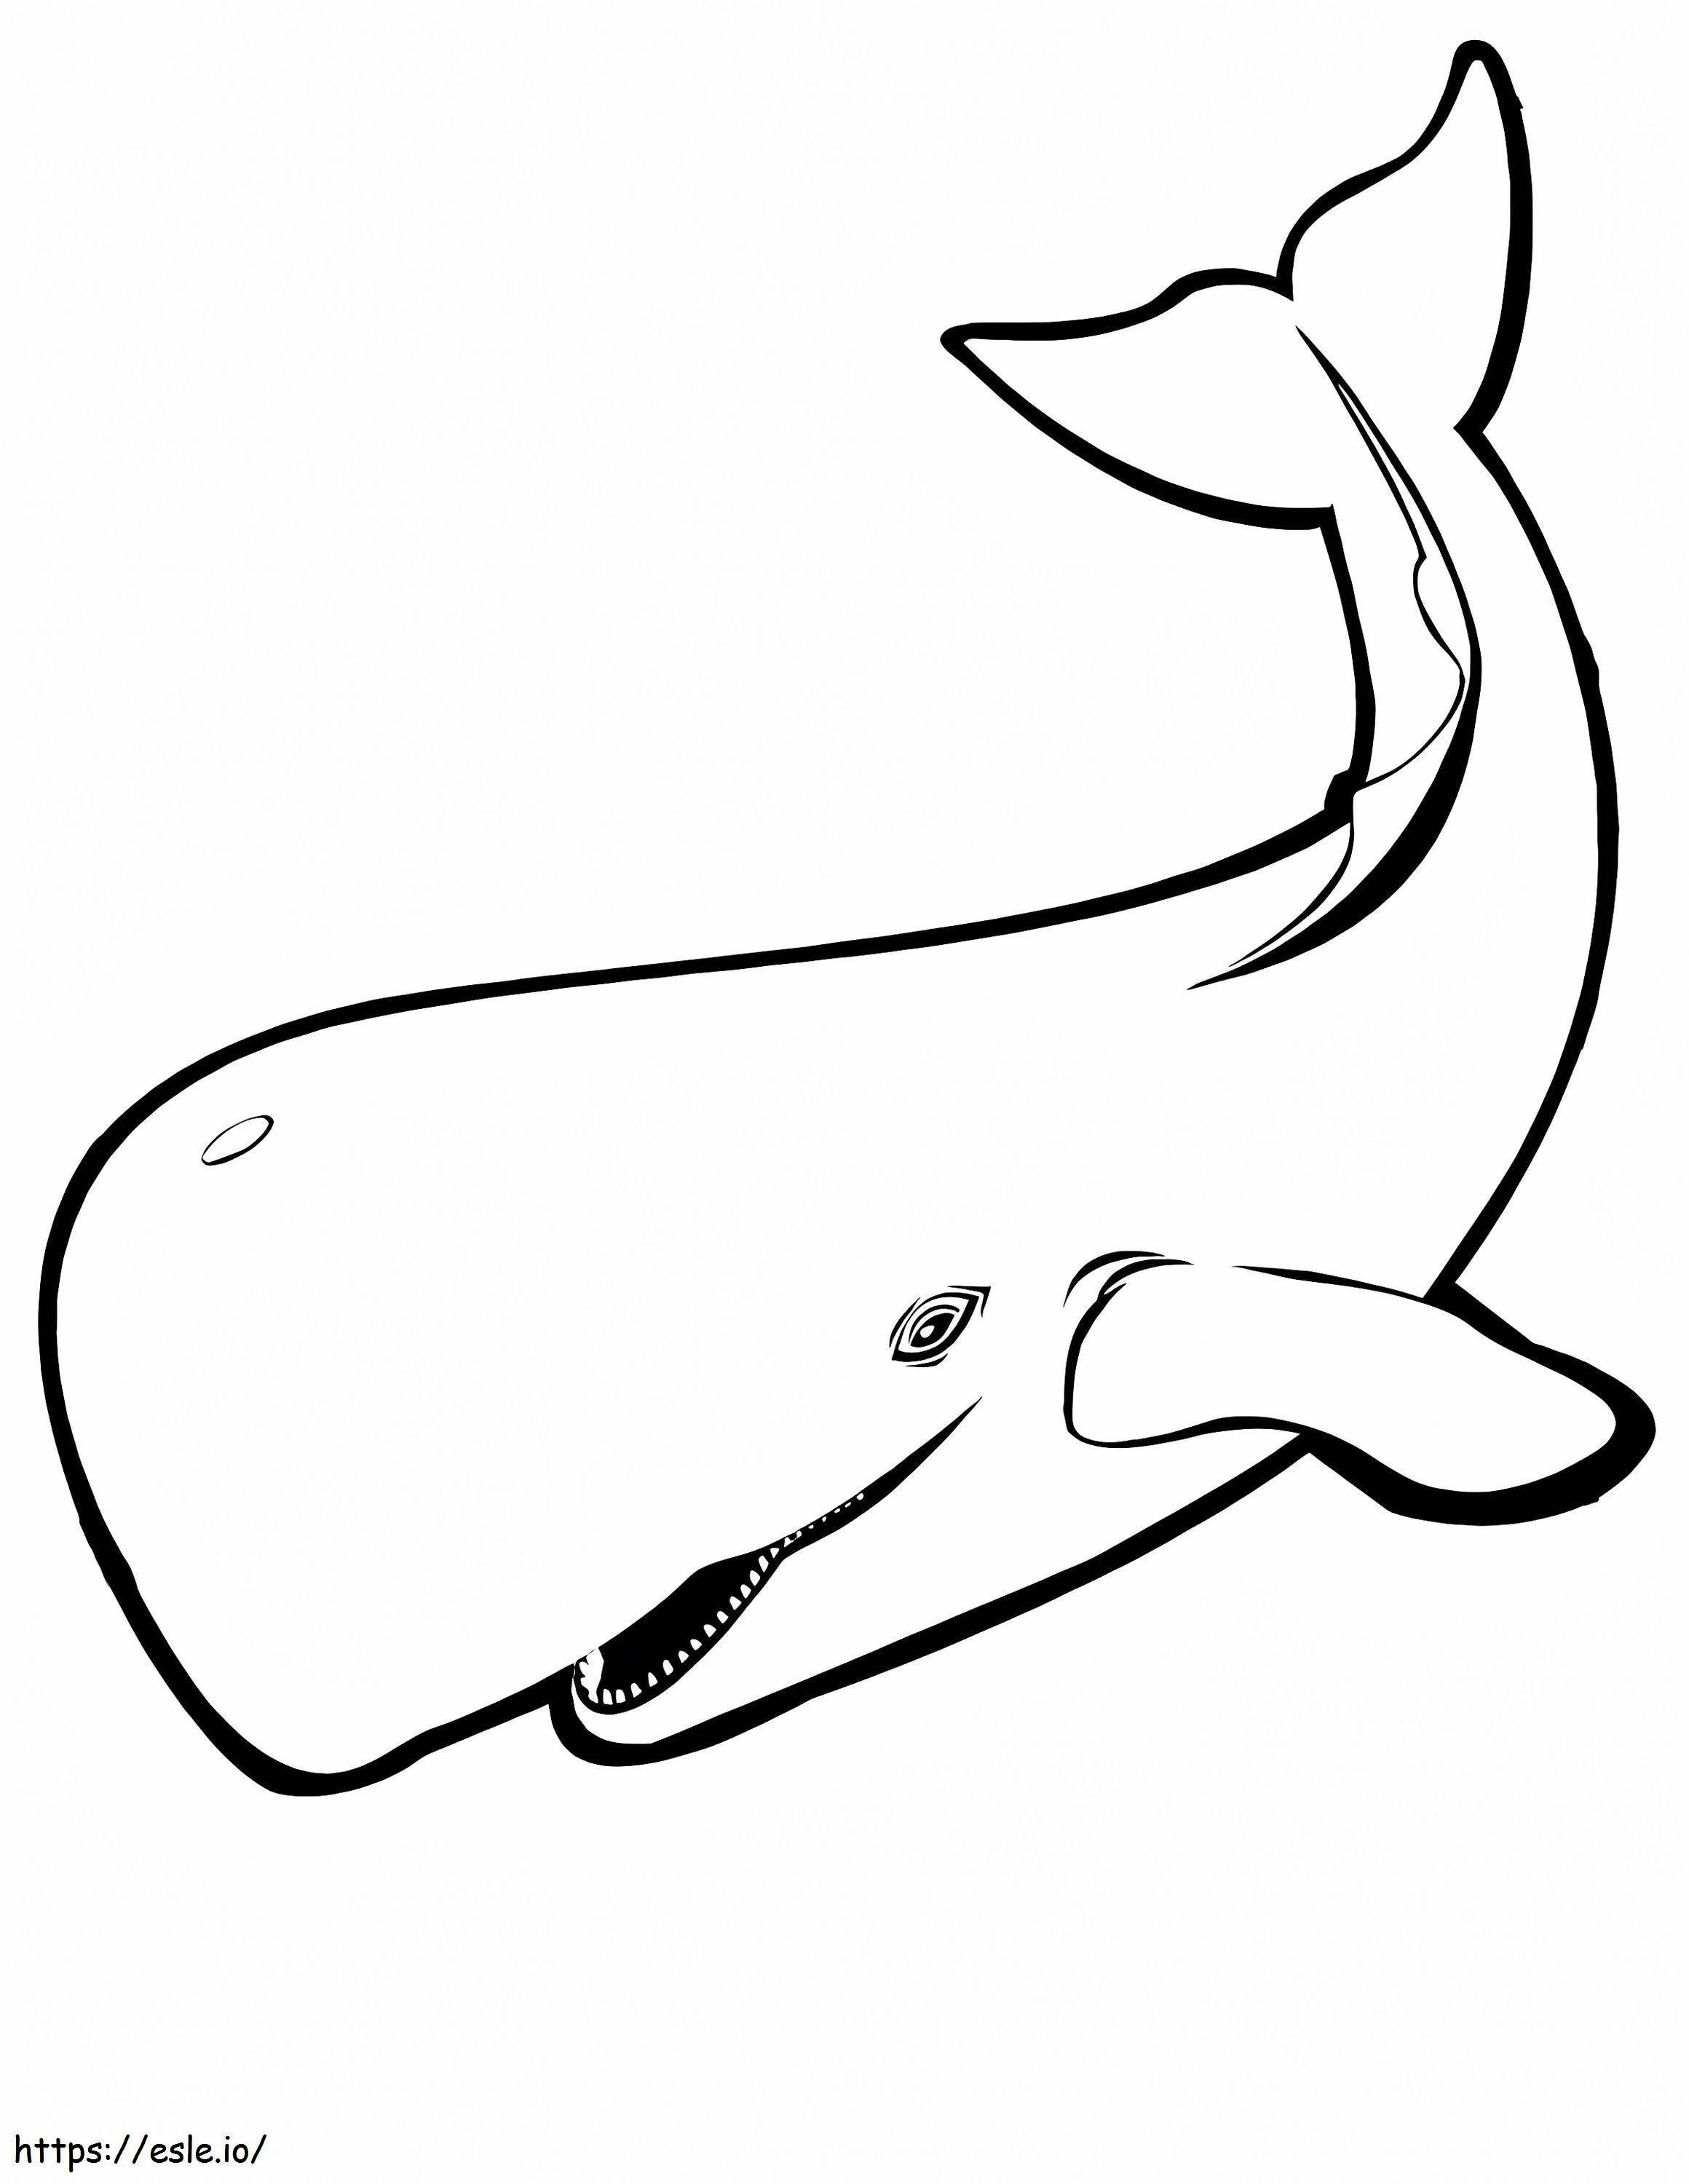 1541747932 Org para colorear ballenas para colorear